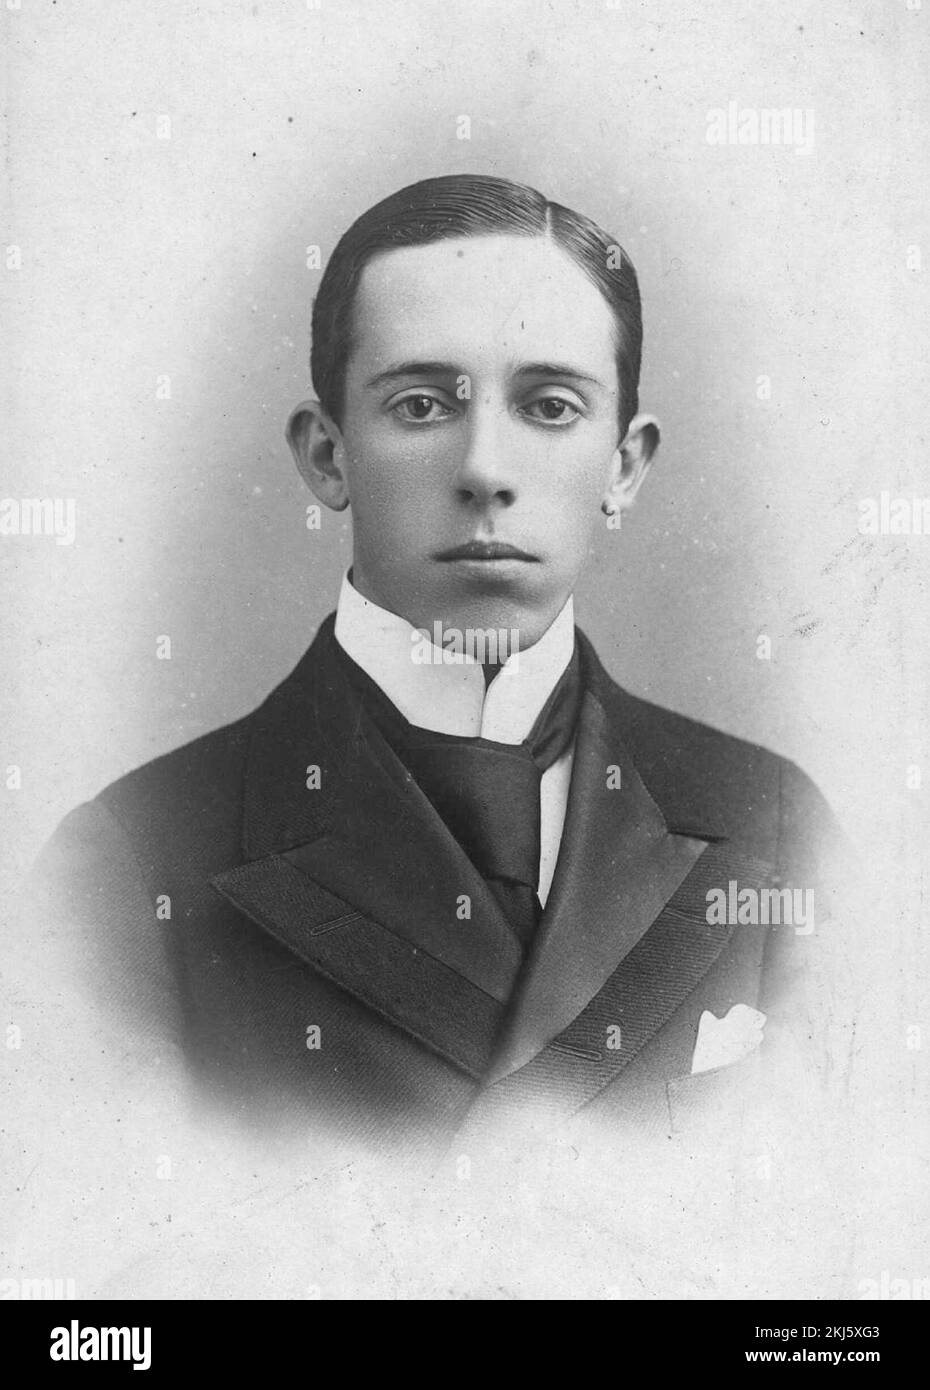 Alberto Santos-Dumont (1873 - 1932) l'aéronautique brésilienne, inventeur pendant ses années d'adolescence, 1890s Banque D'Images